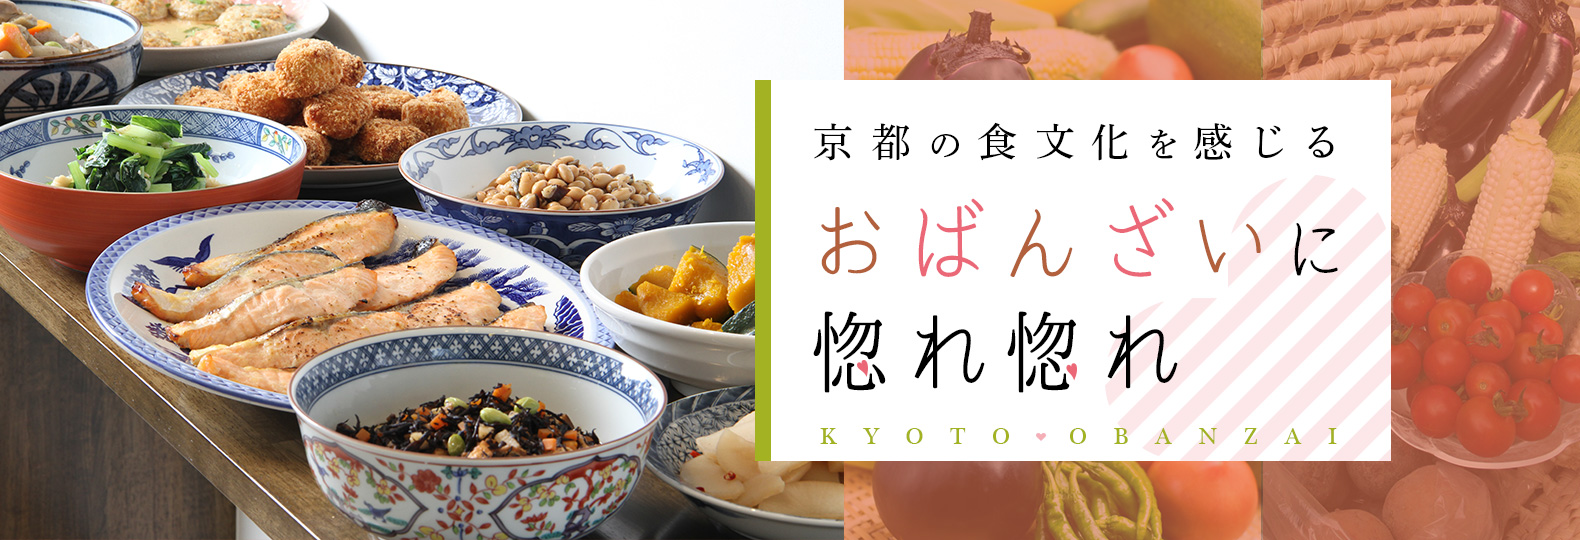 京都の食文化を感じるおばんざいに惚れ惚れ